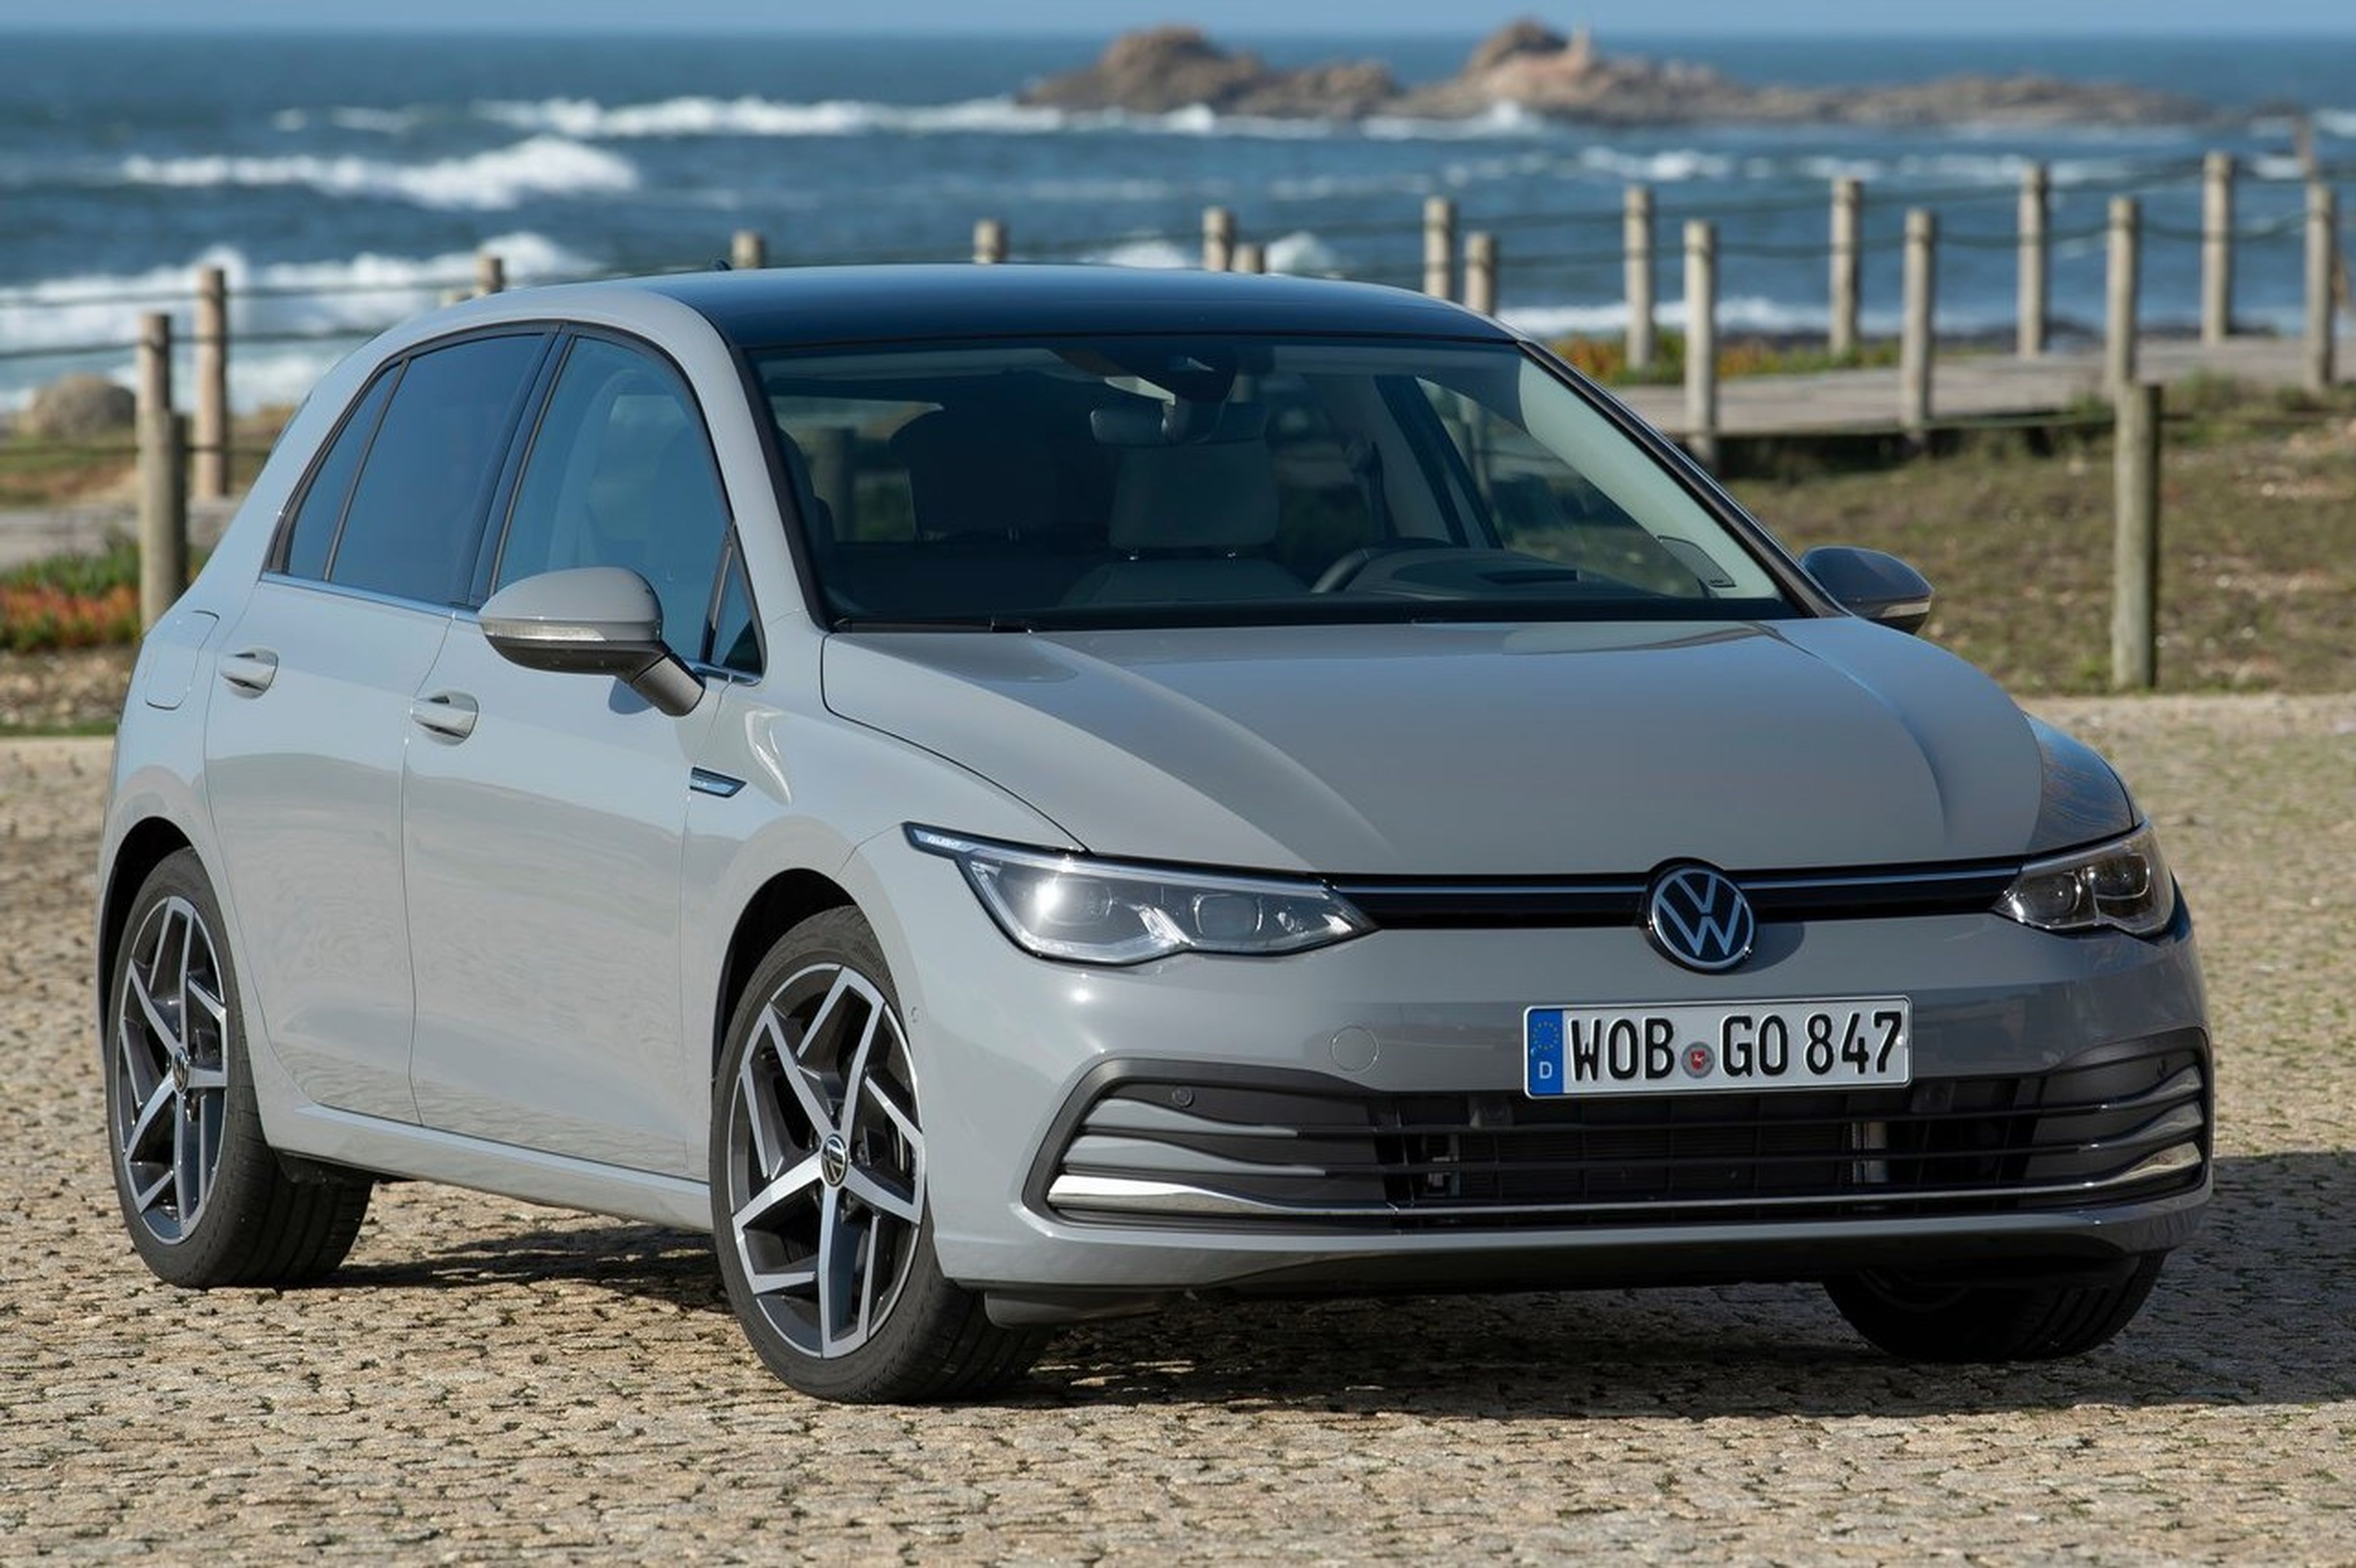 Volkswagen Golf, puntos fuertes y débiles de cara a una posible compra